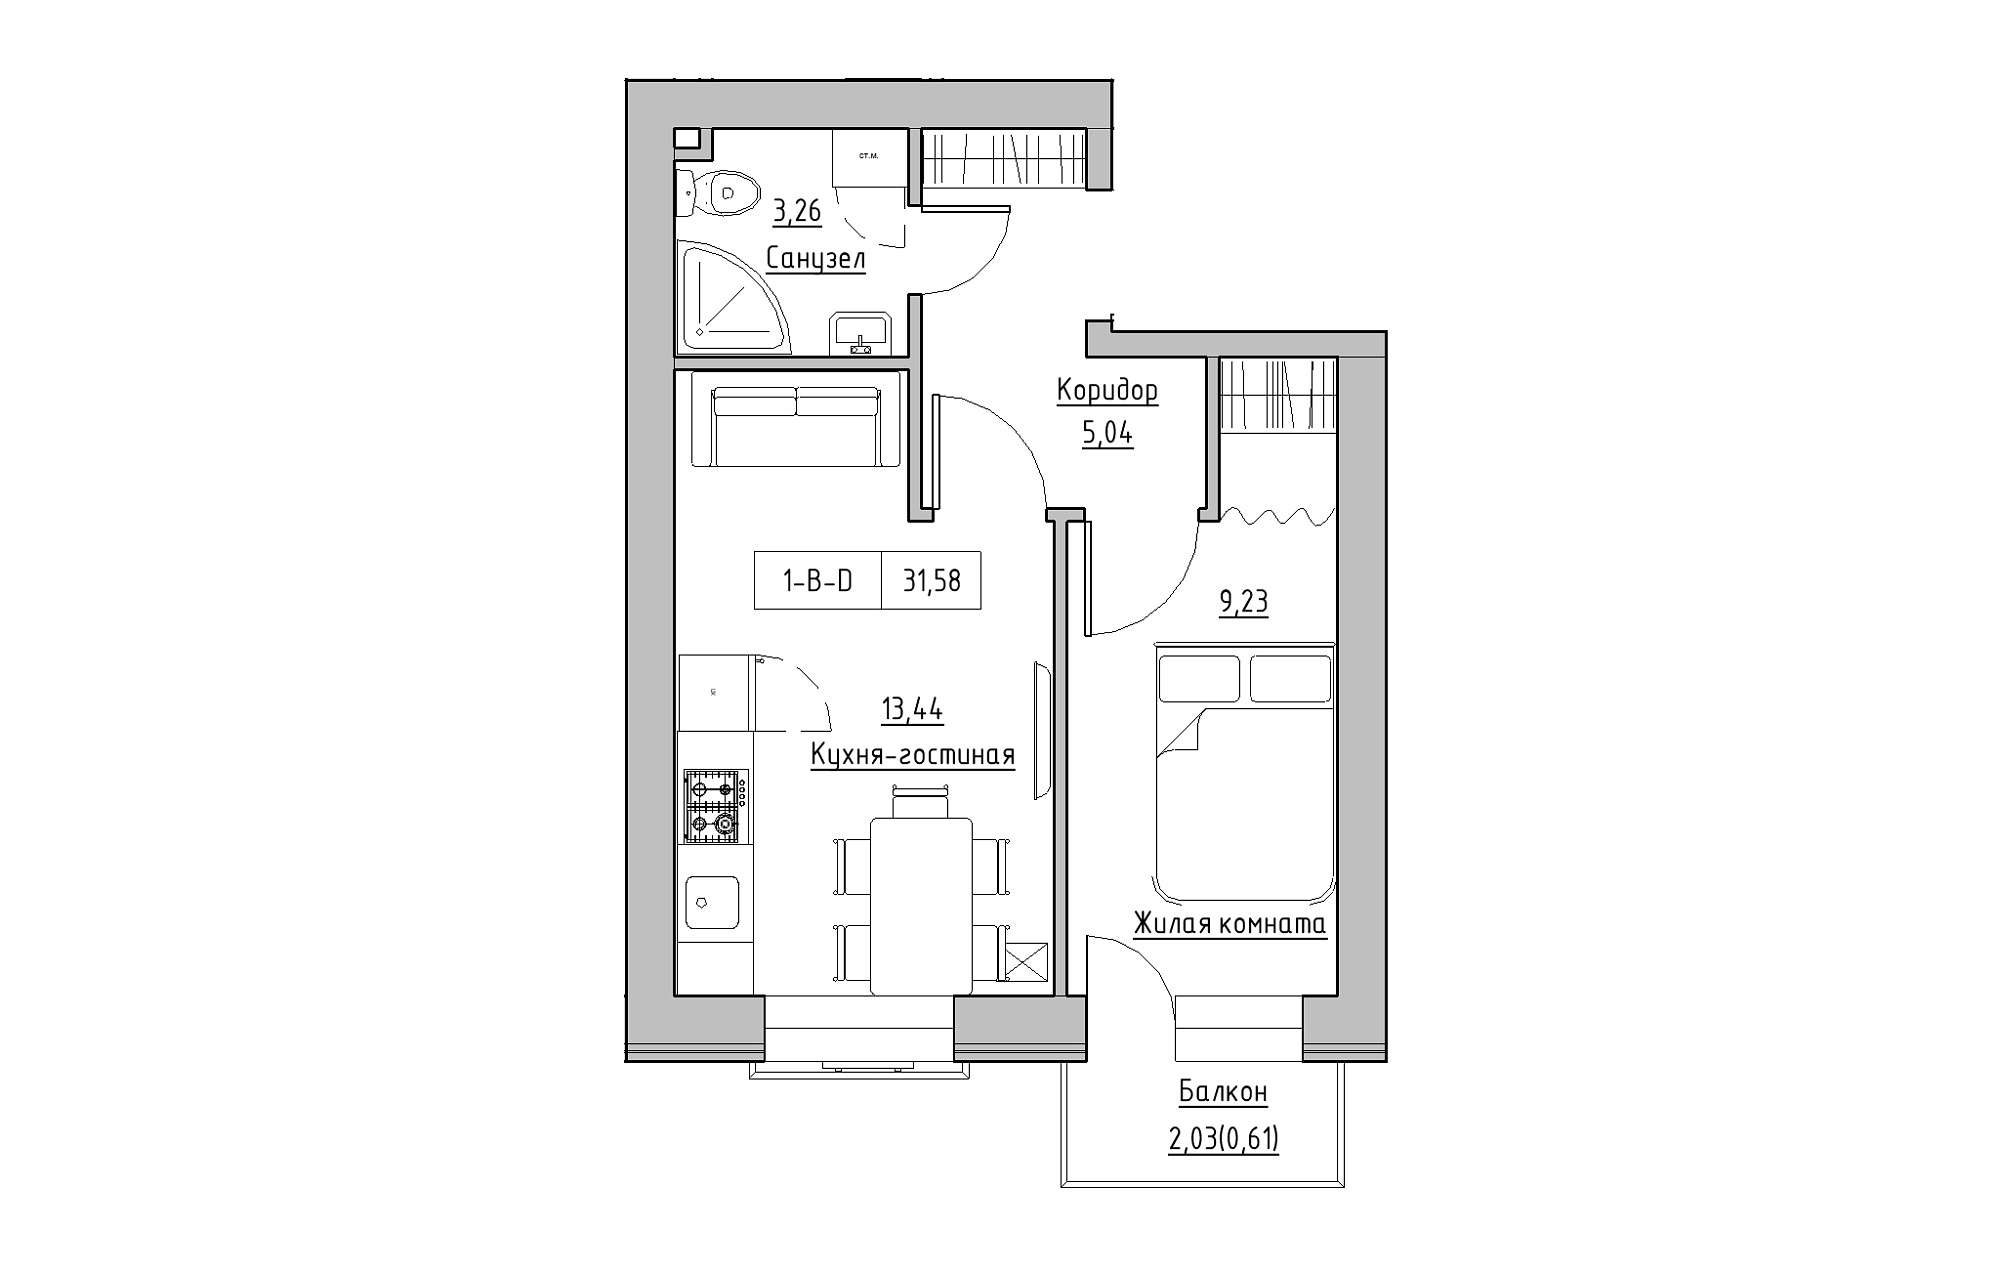 Планування 1-к квартира площею 31.58м2, KS-018-03/0003.